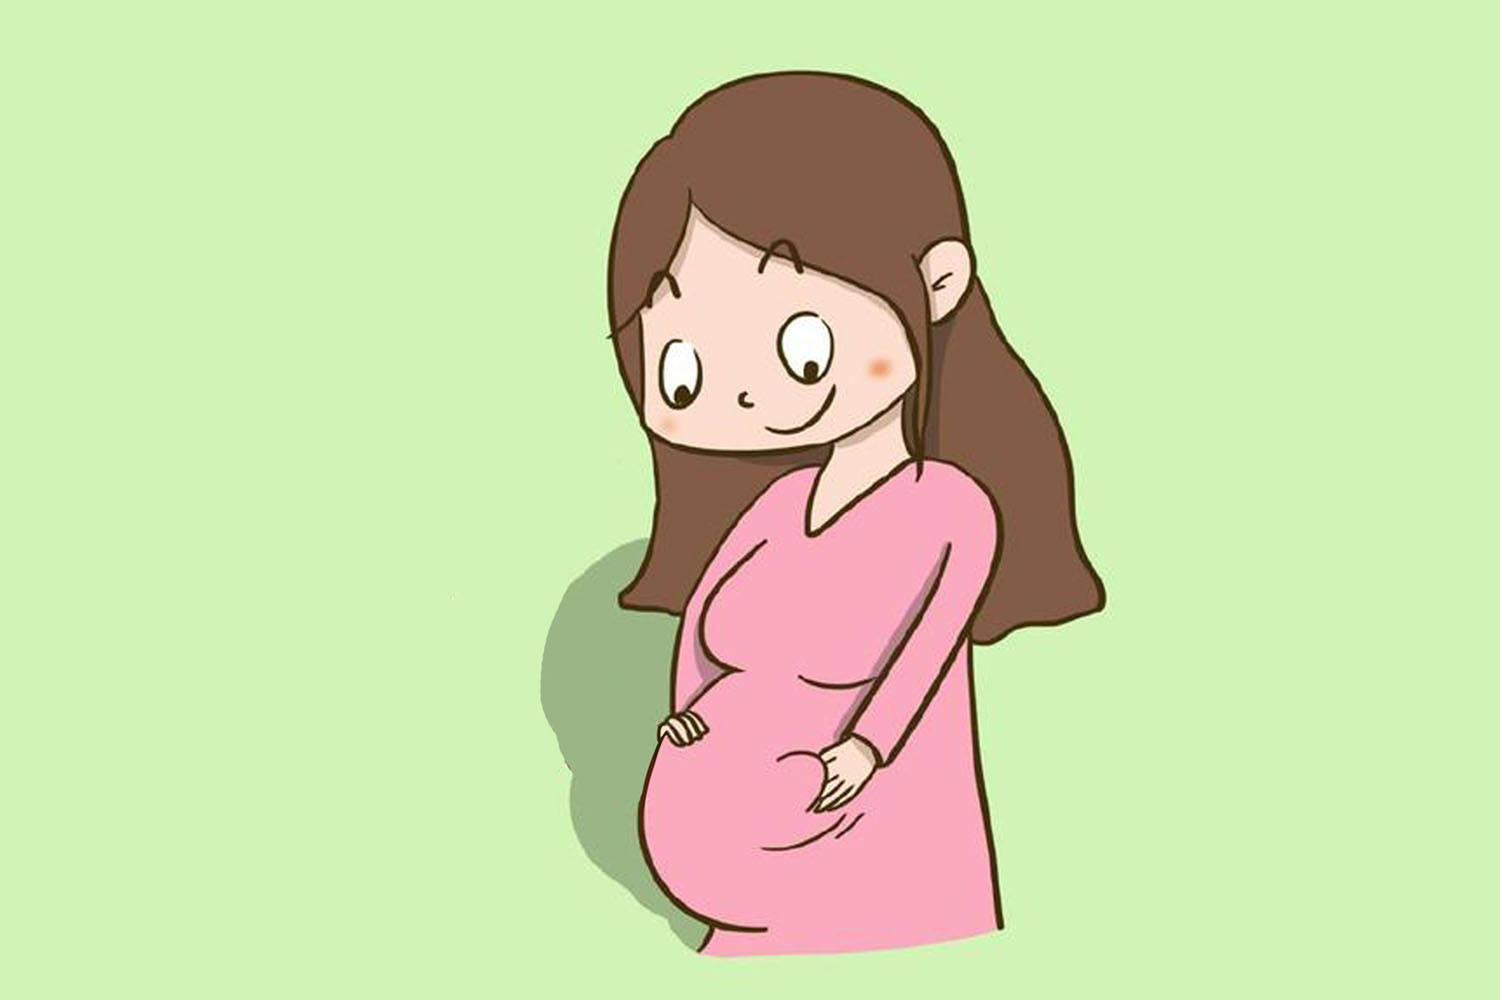 原创一张动图告诉你怀孕后,女性身体内脏被挤成了什么样